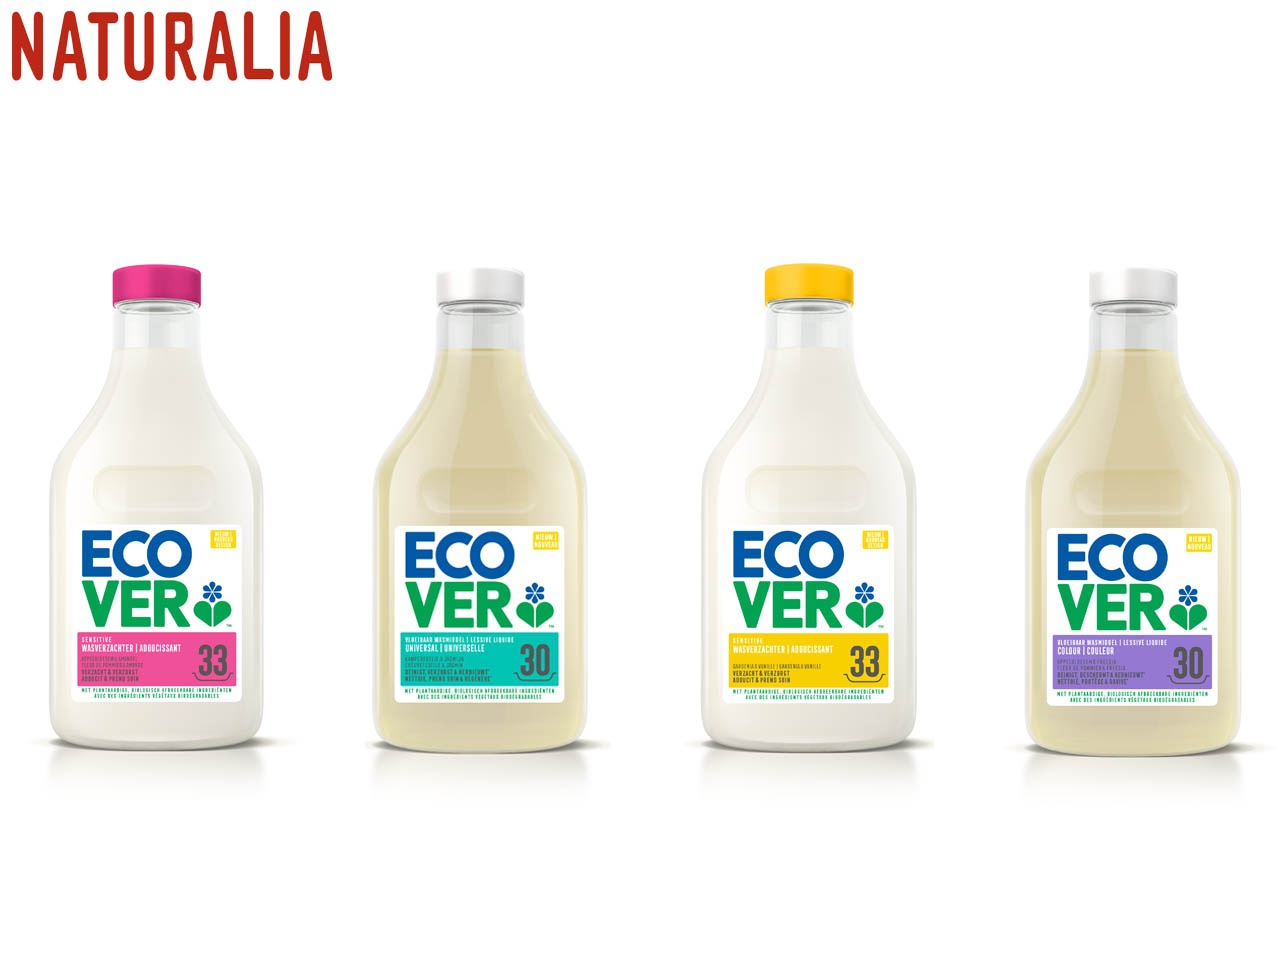 Naturalia lance la marque de lessive Ecover, pour un objectif « no gaspi & clean plastique ! »